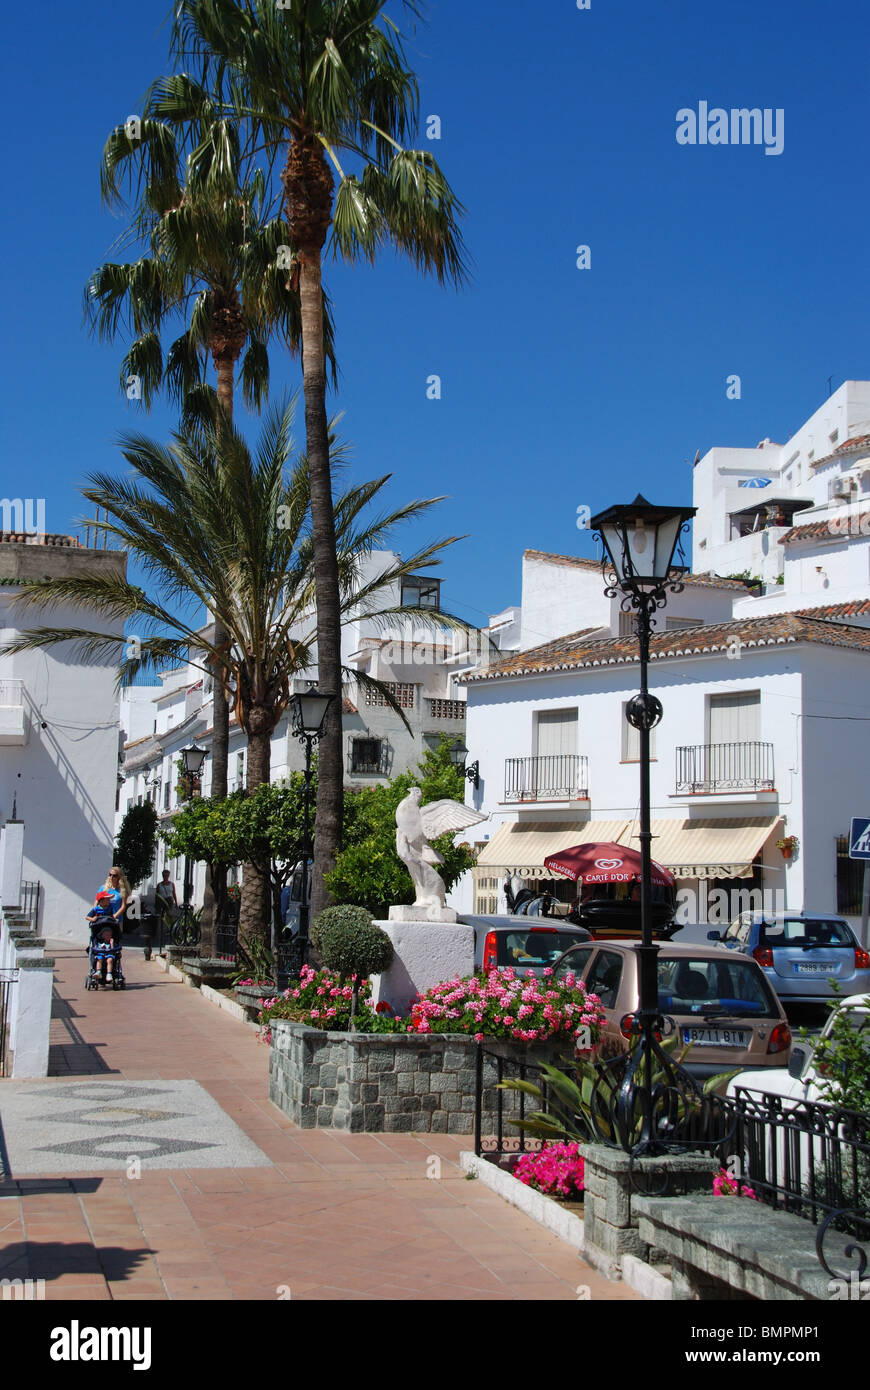 Plaza de la Paz, Mijas, Costa del Sol, Malaga Province, Andalucia, Spain, Western Europe. Stock Photo